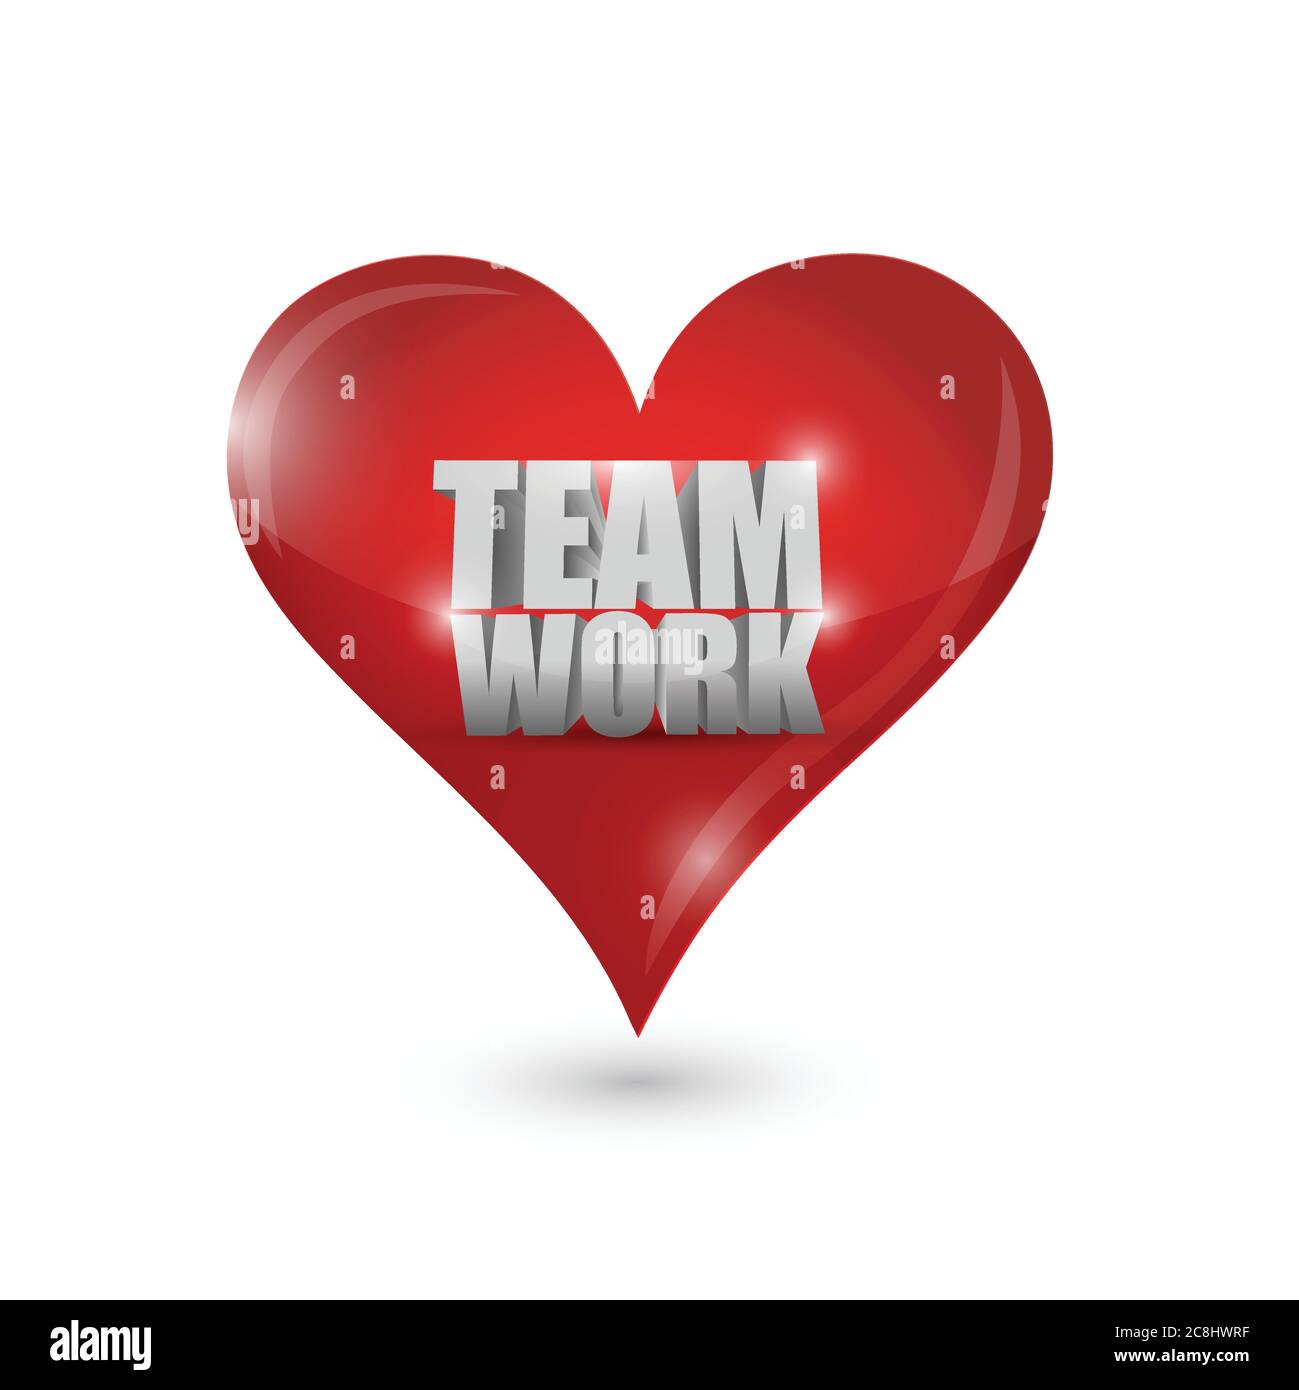 Teamwork love heart illustration design over a white background Stock Vector